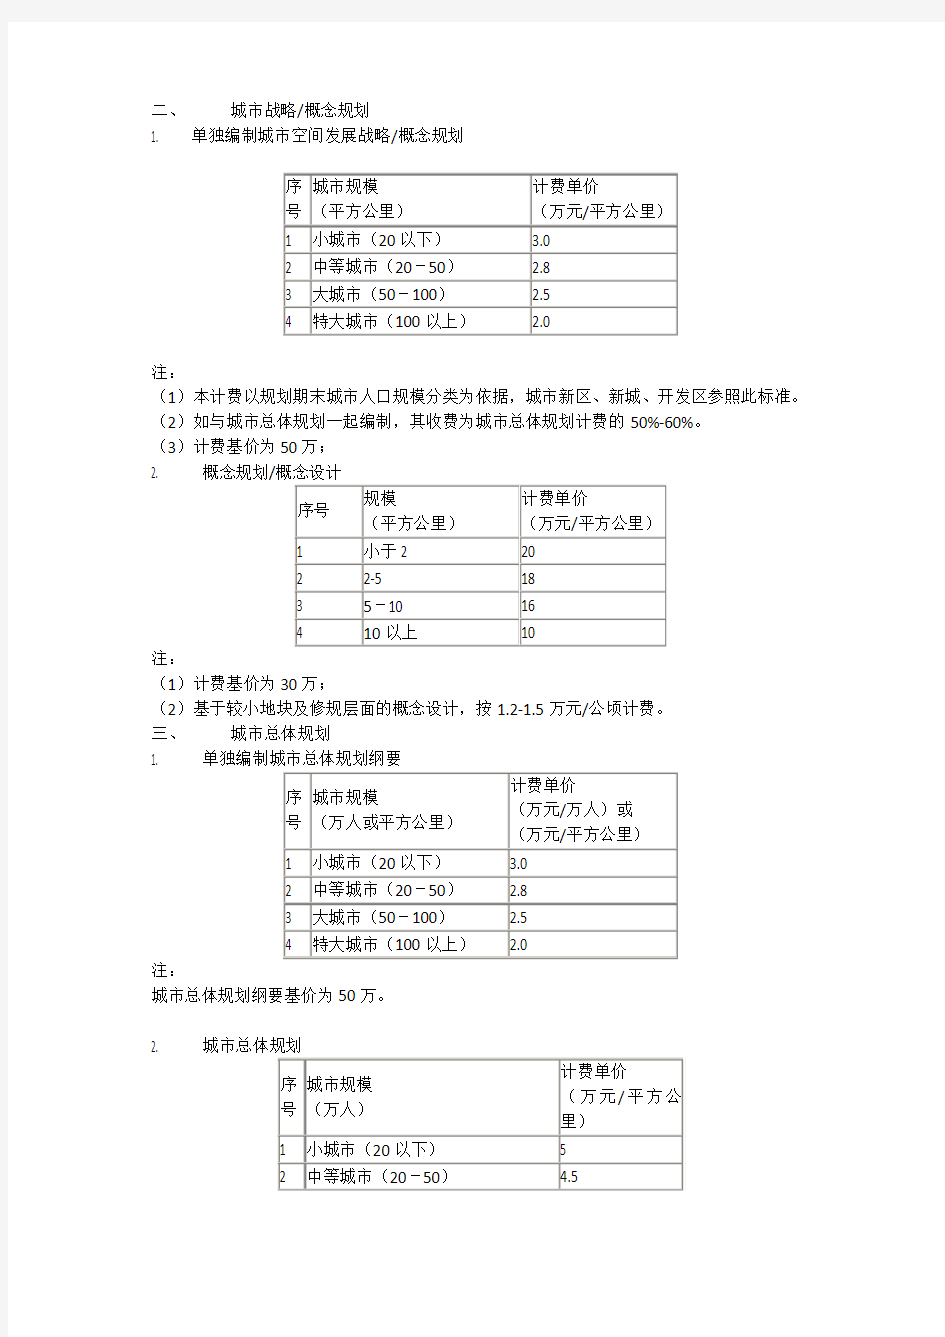 上海同济城市规划设计研究院-规划设计收费指导意见(2008年07月23日)